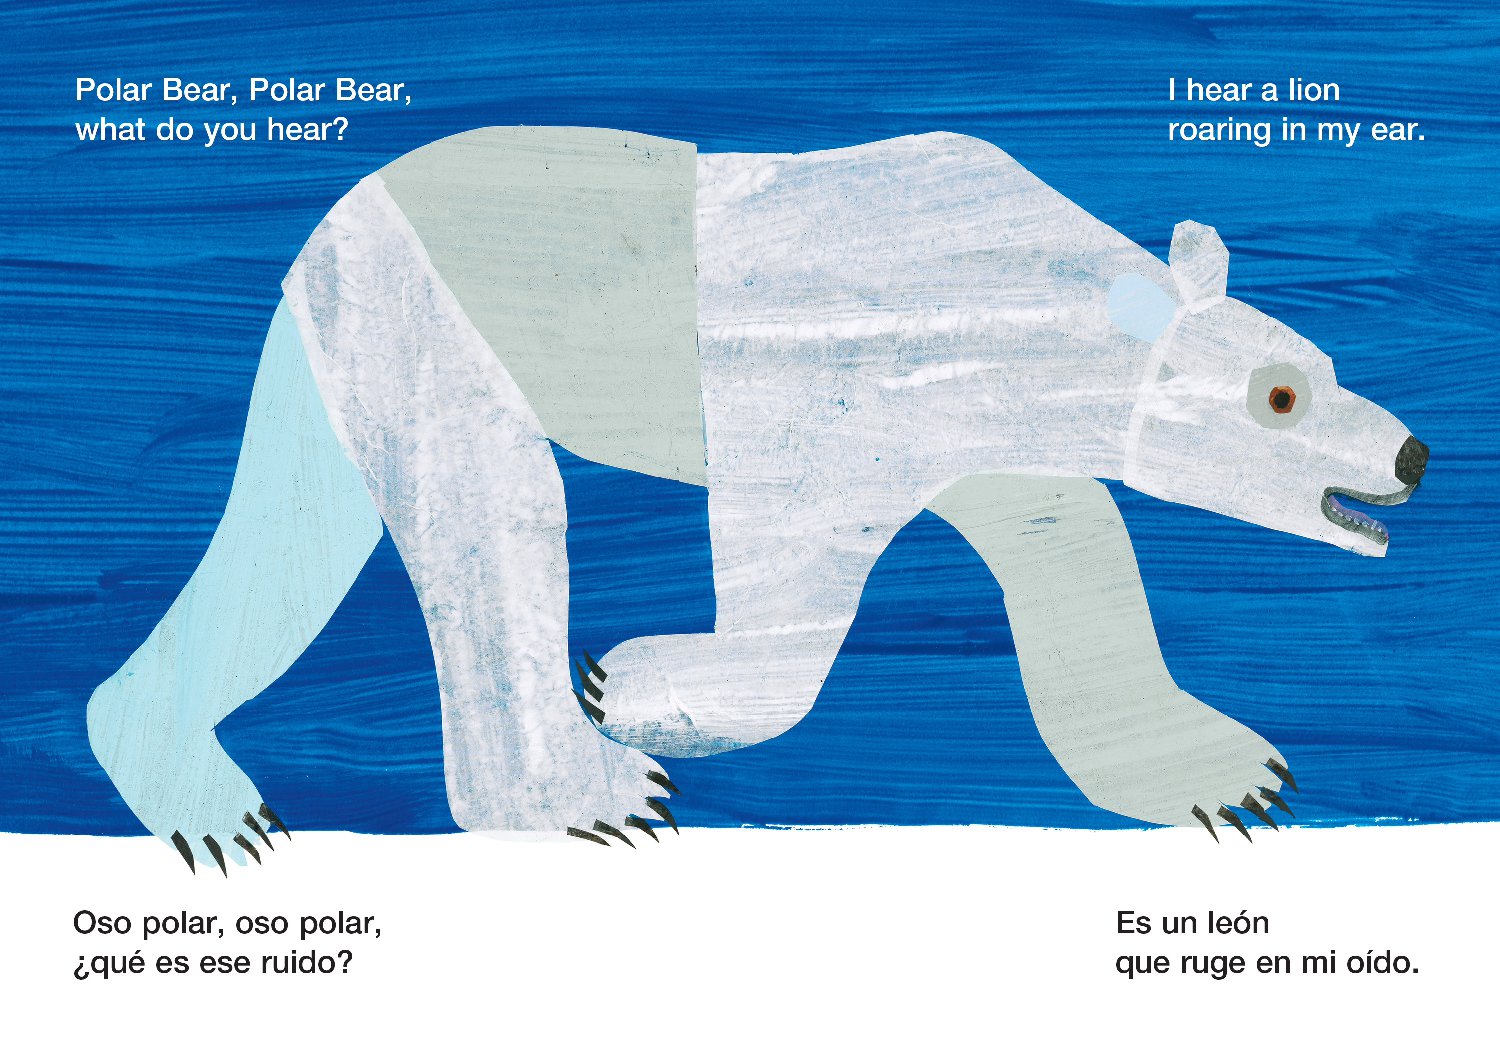 Polar Bear, Polar Bear, What Do You Hear? / Oso polar, oso polar, que es ese ruido? (Bilingual board book - English / Spanish)